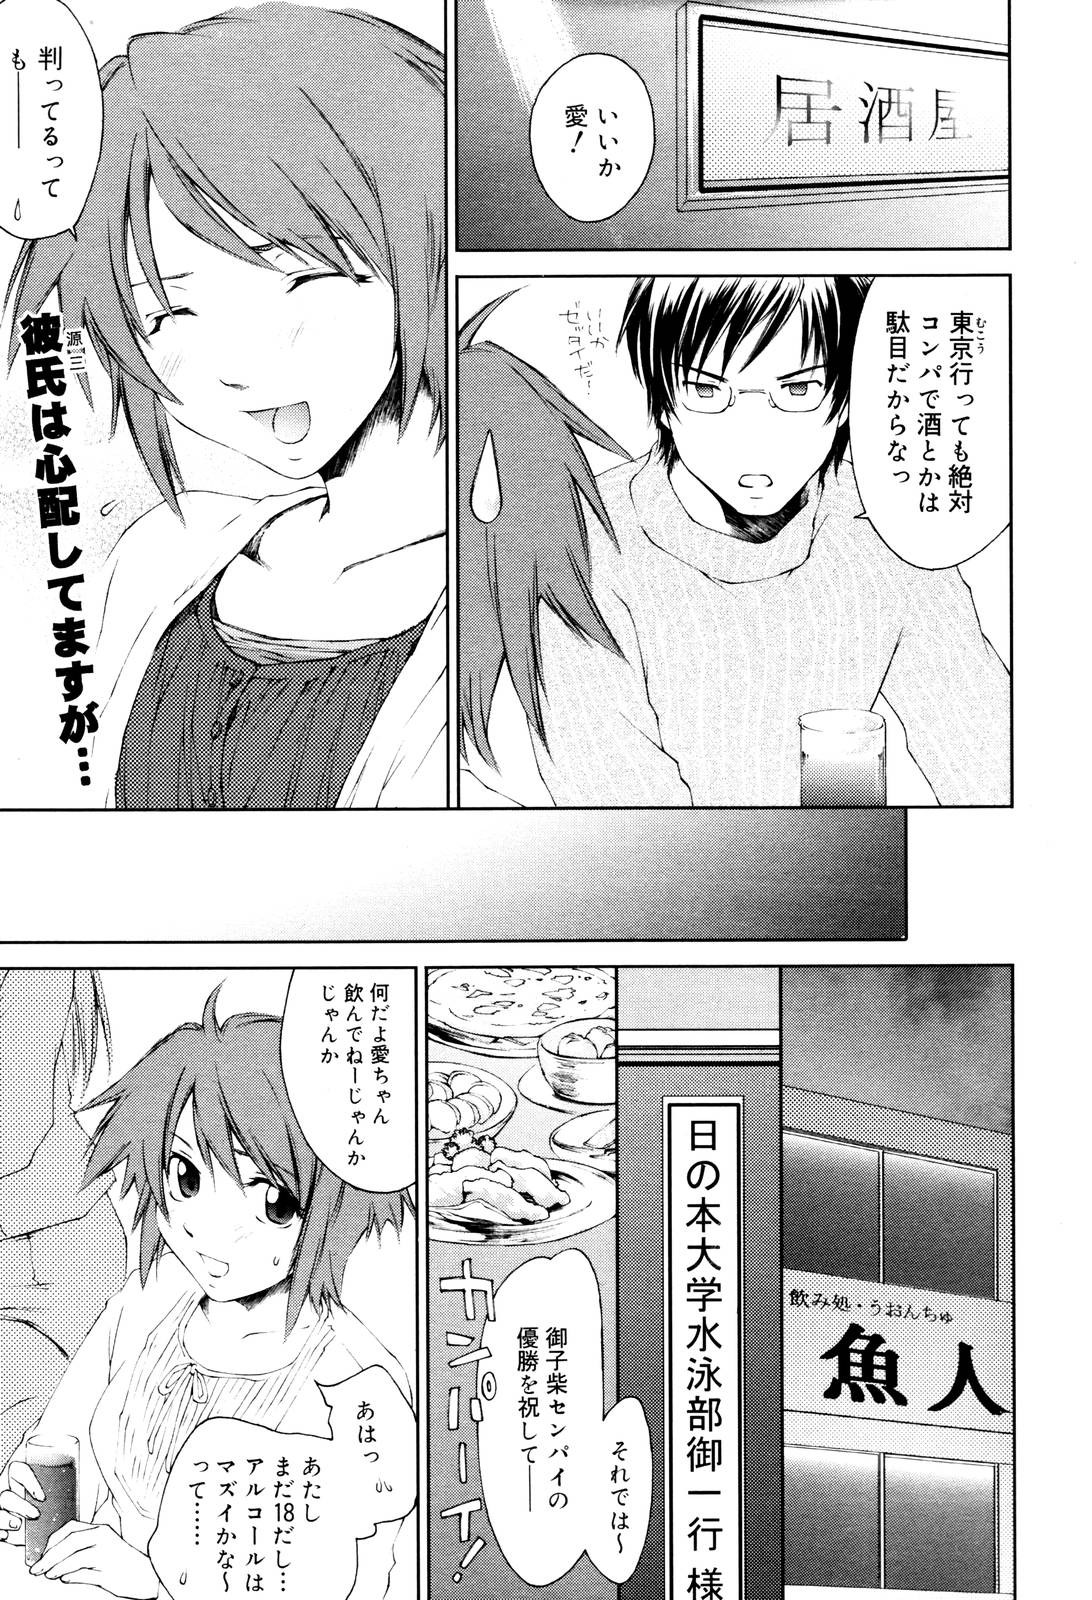 Manga Bangaichi 2006-01 page 41 full